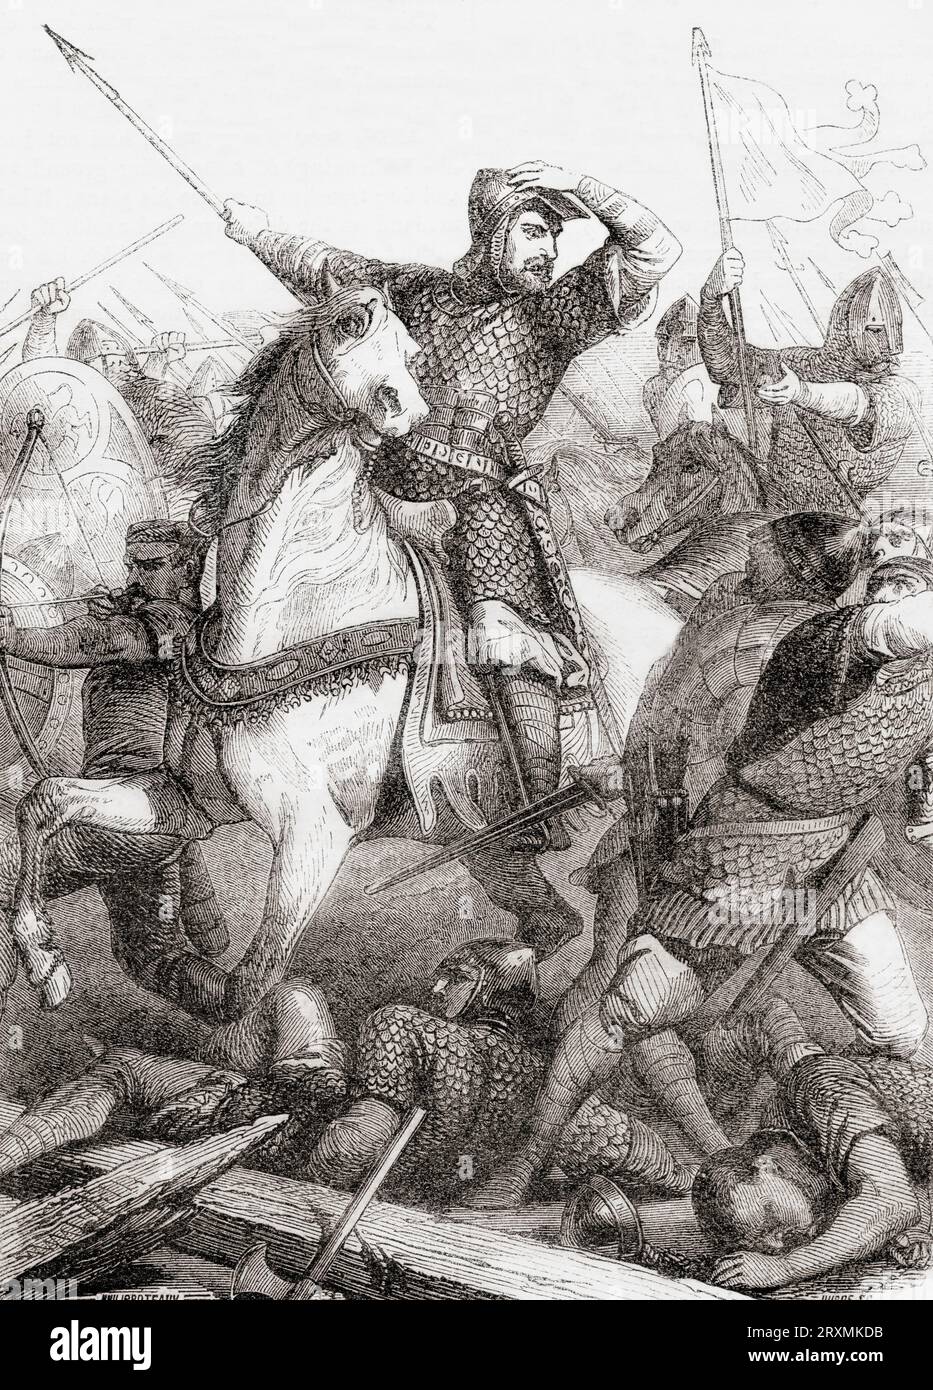 Die Schlacht von Hastings am 14. Oktober 1066, die zwischen der normannisch-französischen Armee von William, dem Herzog der Normandie, und der englischen Armee unter dem angelsächsischen König Harold Godwinson ausgetragen wurde, begann die normannische Eroberung Englands. Aus Cassell's Illustrated History of England, veröffentlicht 1857. Stockfoto